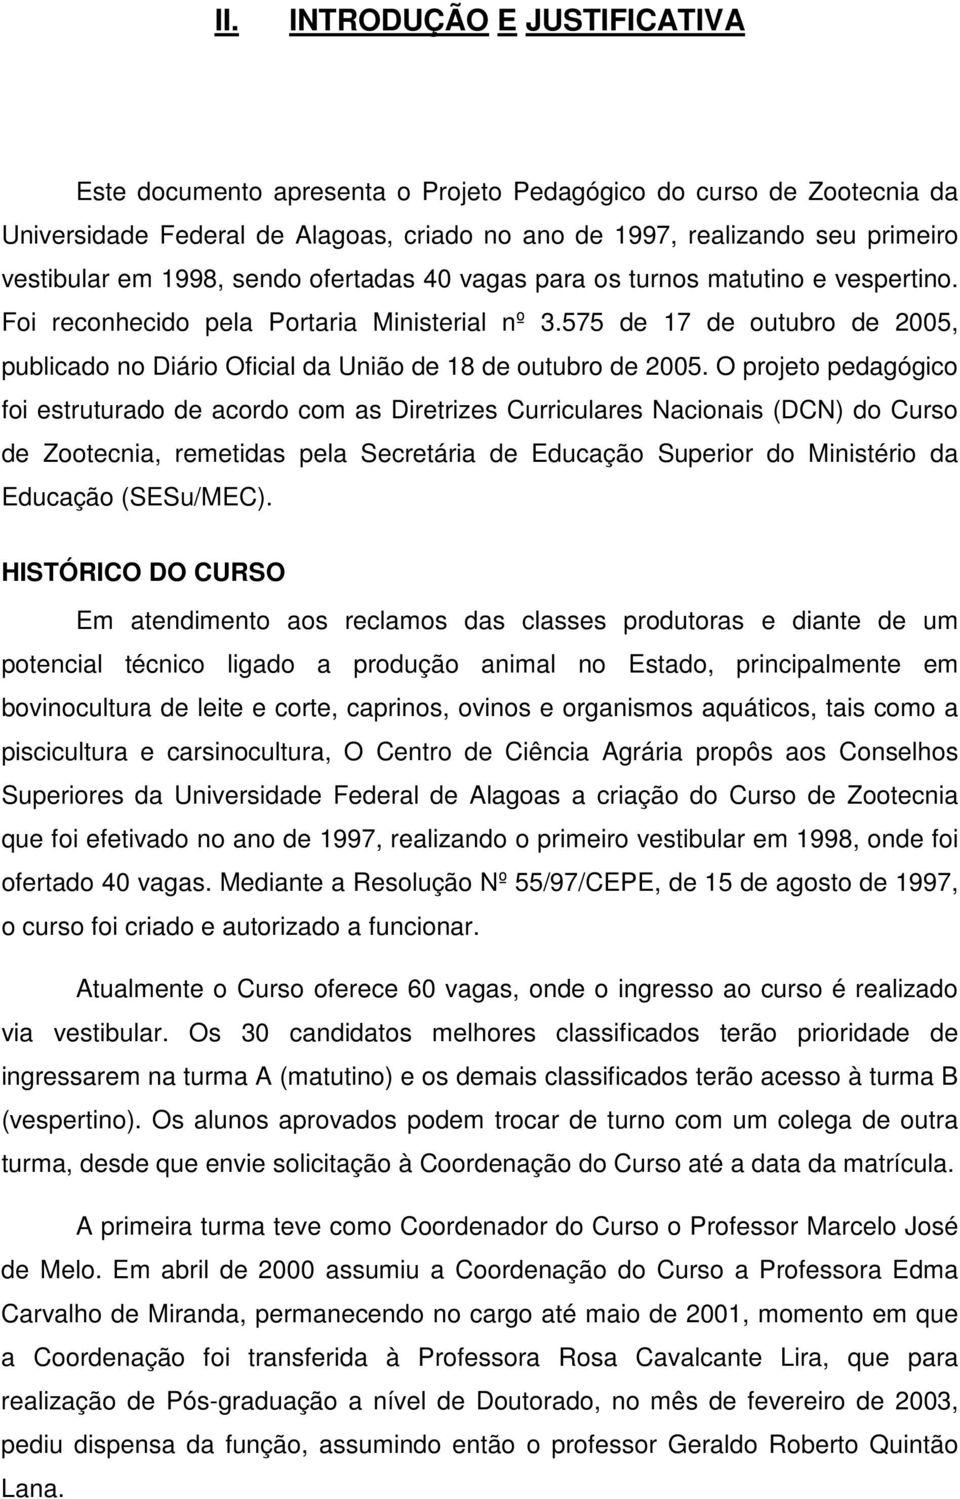 575 de 17 de outubro de 2005, publicado no Diário Oficial da União de 18 de outubro de 2005.